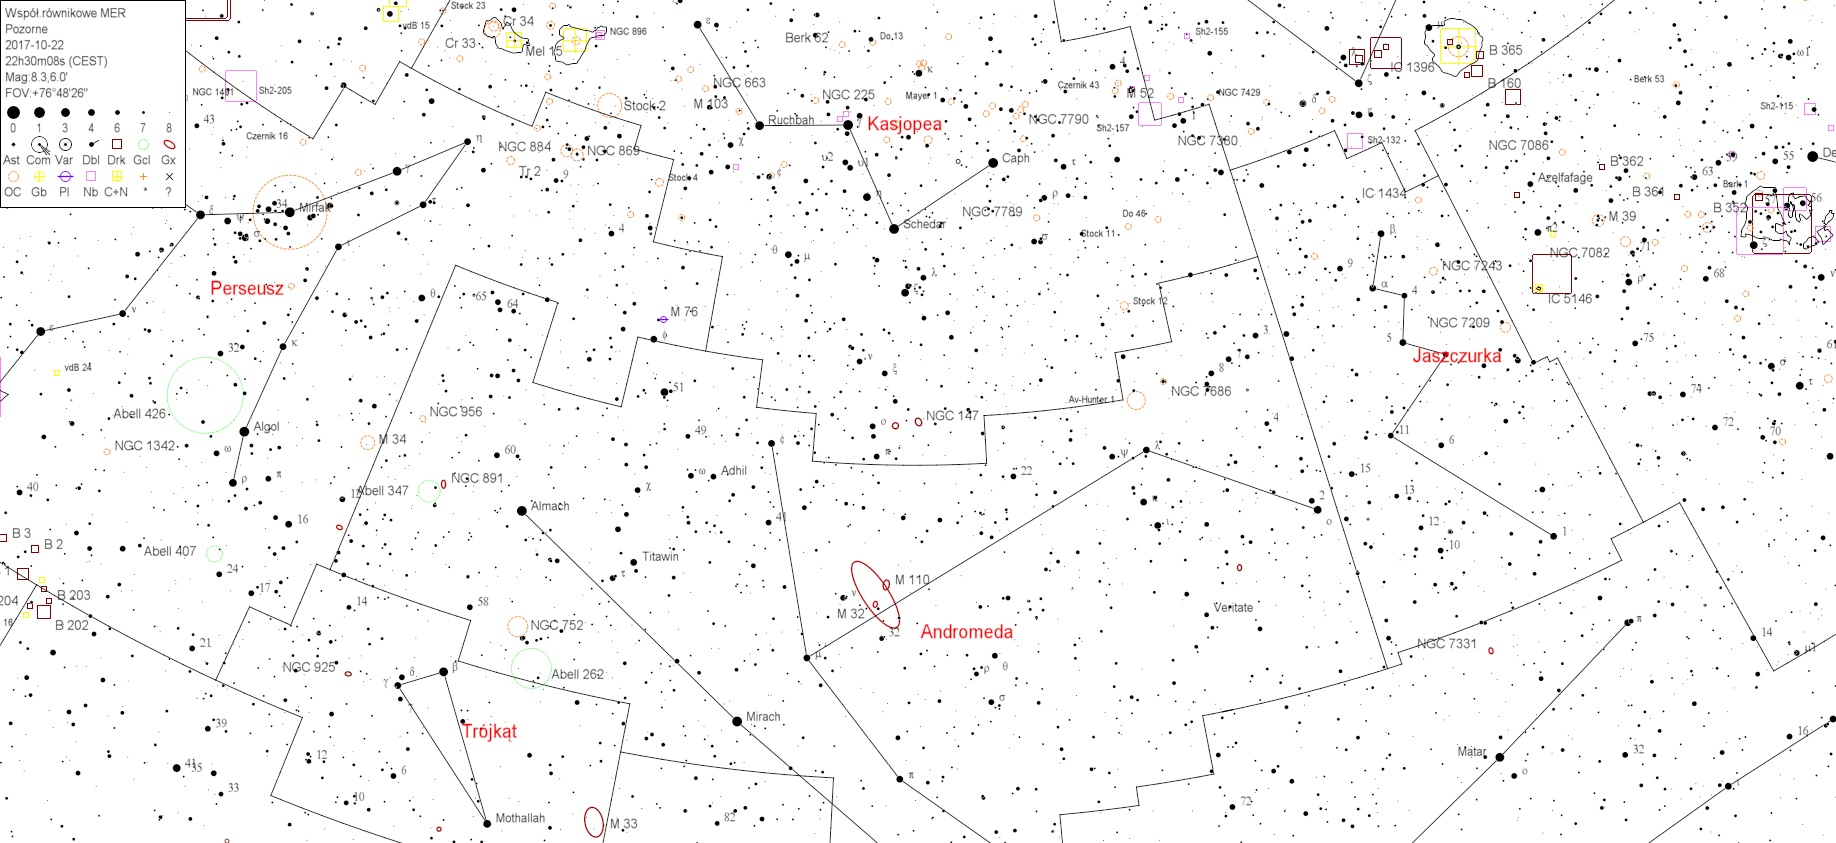 NGC147v4.jpg